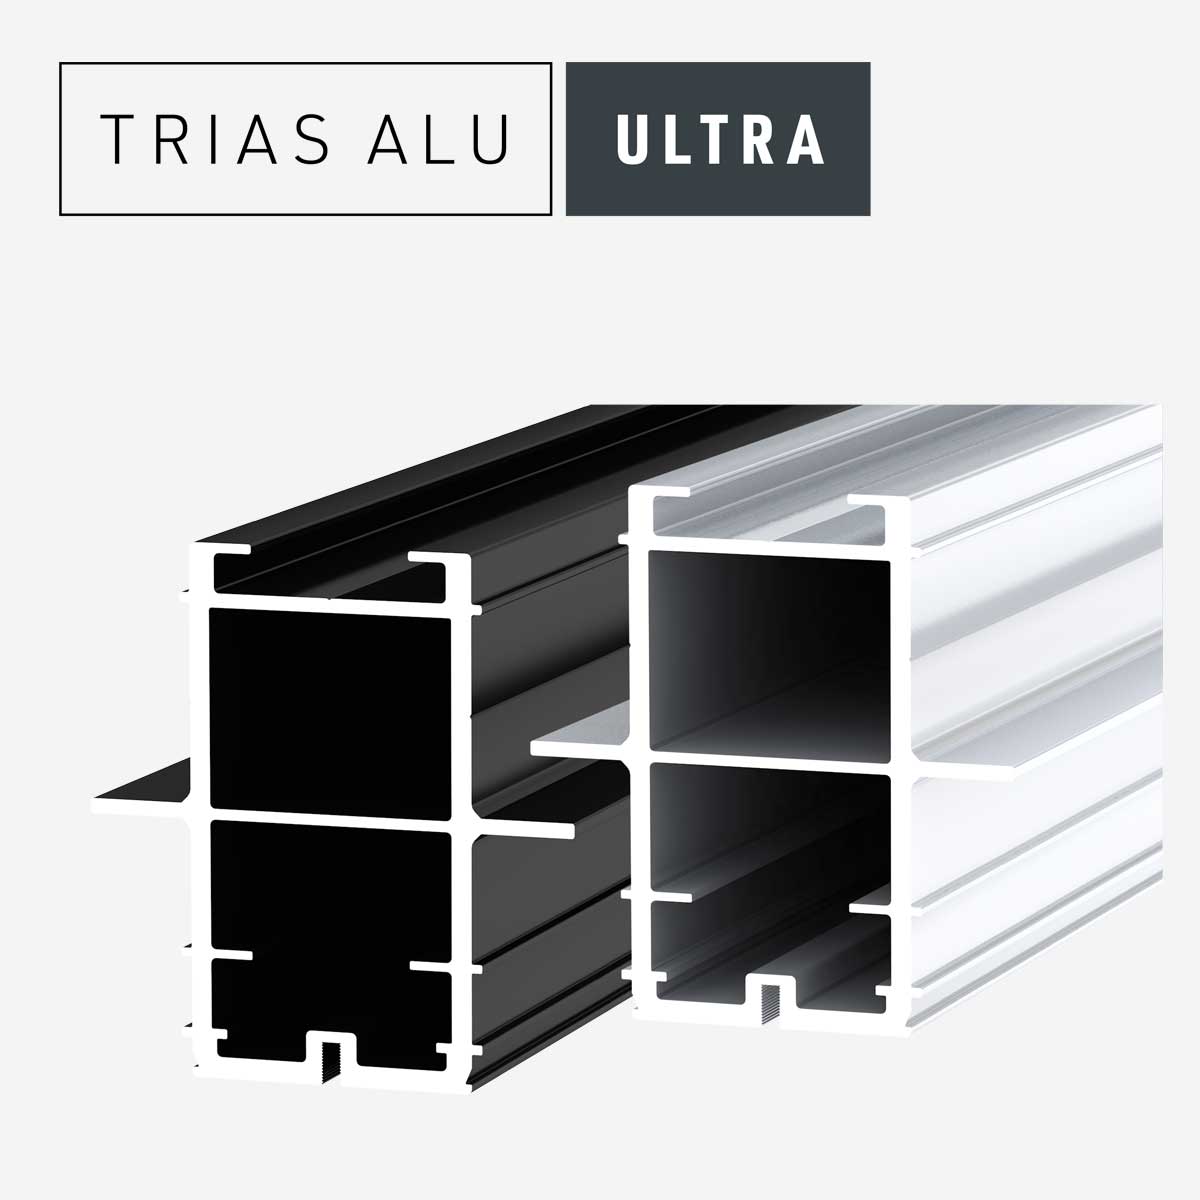 Das Bild zeigt die Terrassenprofile Ultra des Systems TRIAS ALU